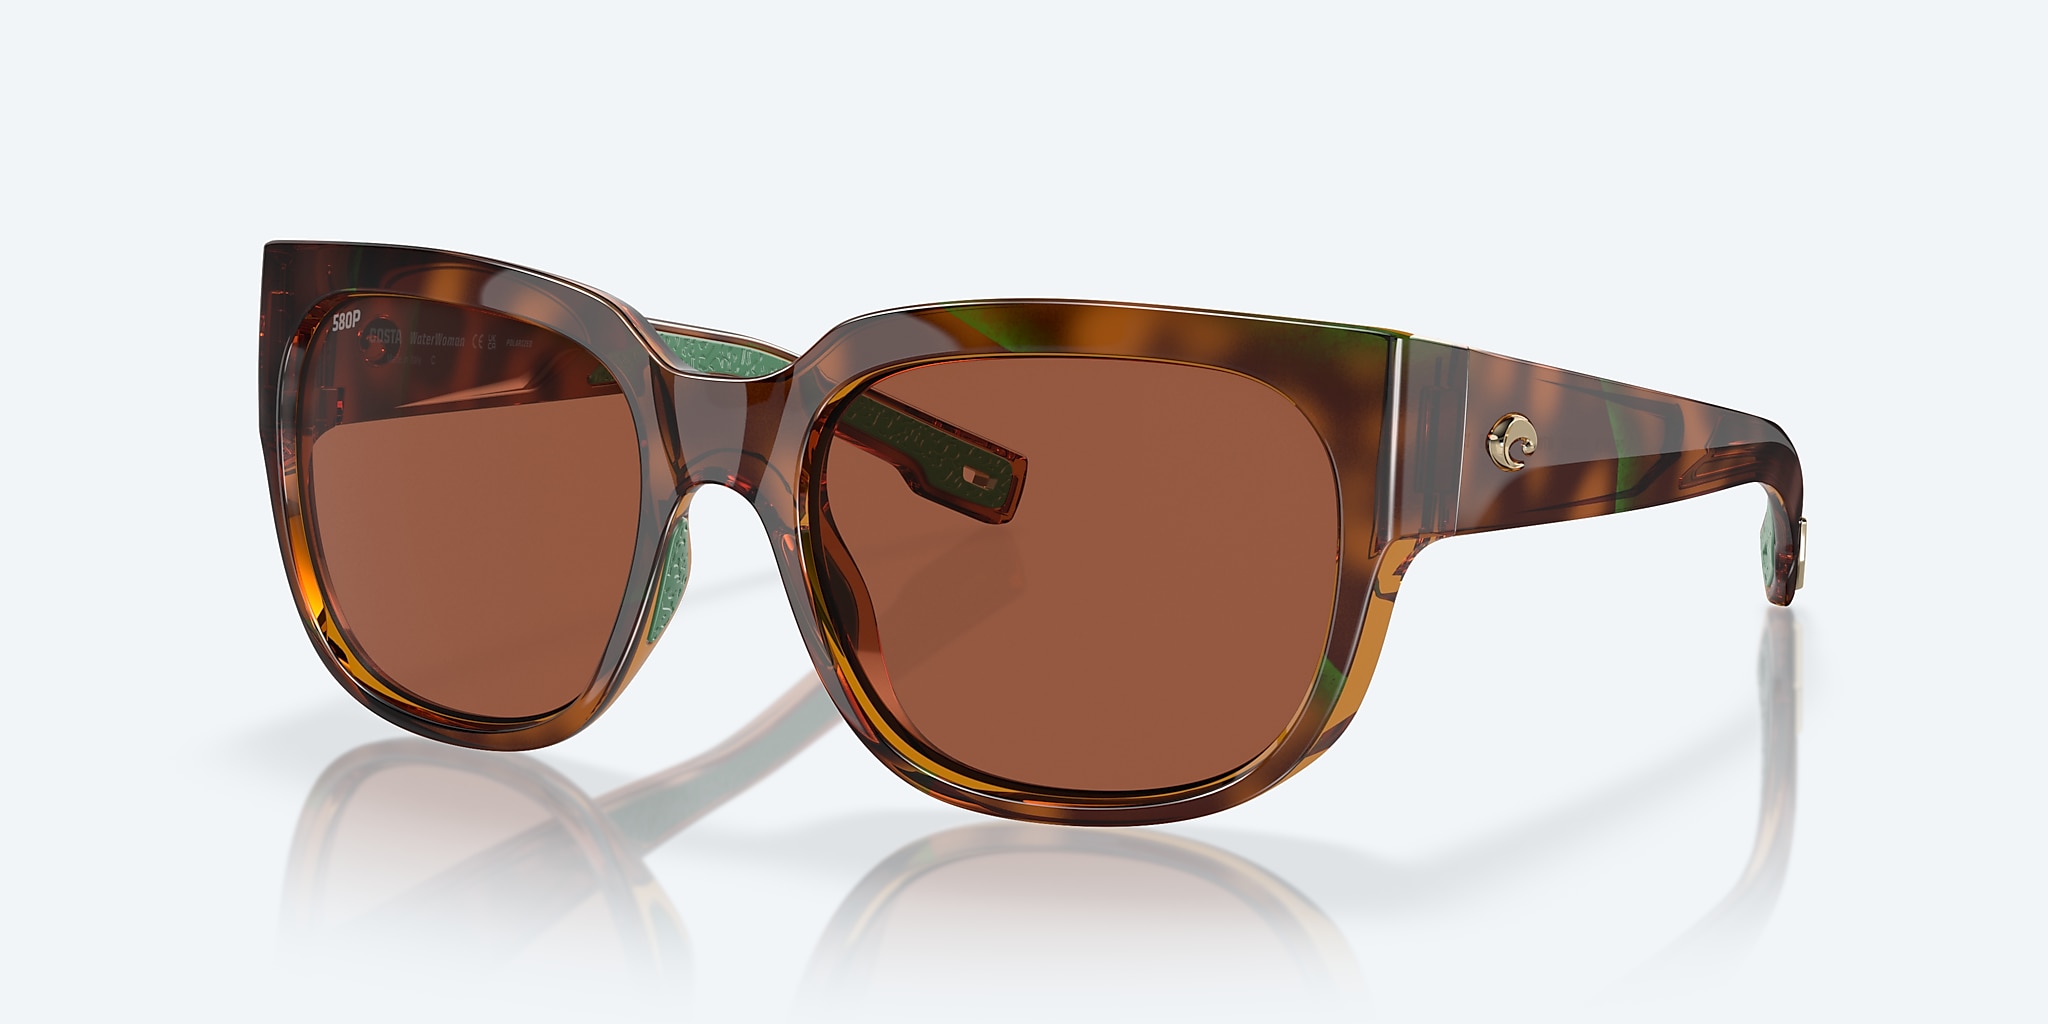 Waterwoman Polarized Sunglasses in Copper